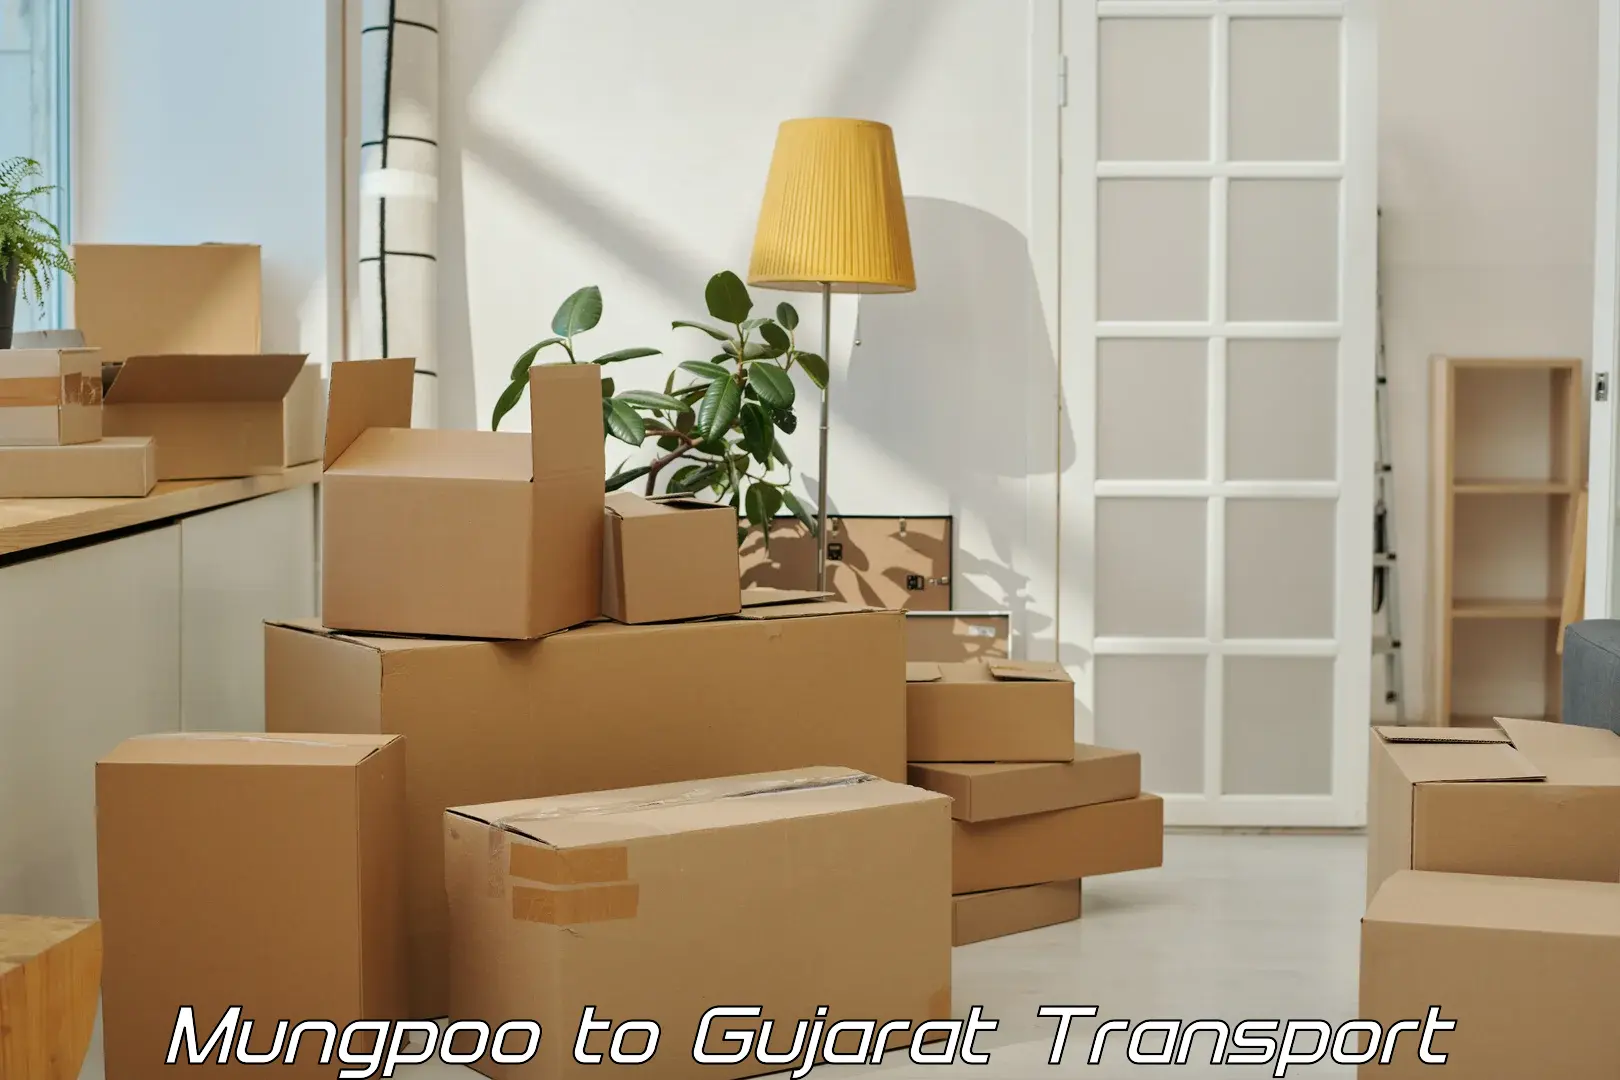 Interstate goods transport Mungpoo to Vadnagar